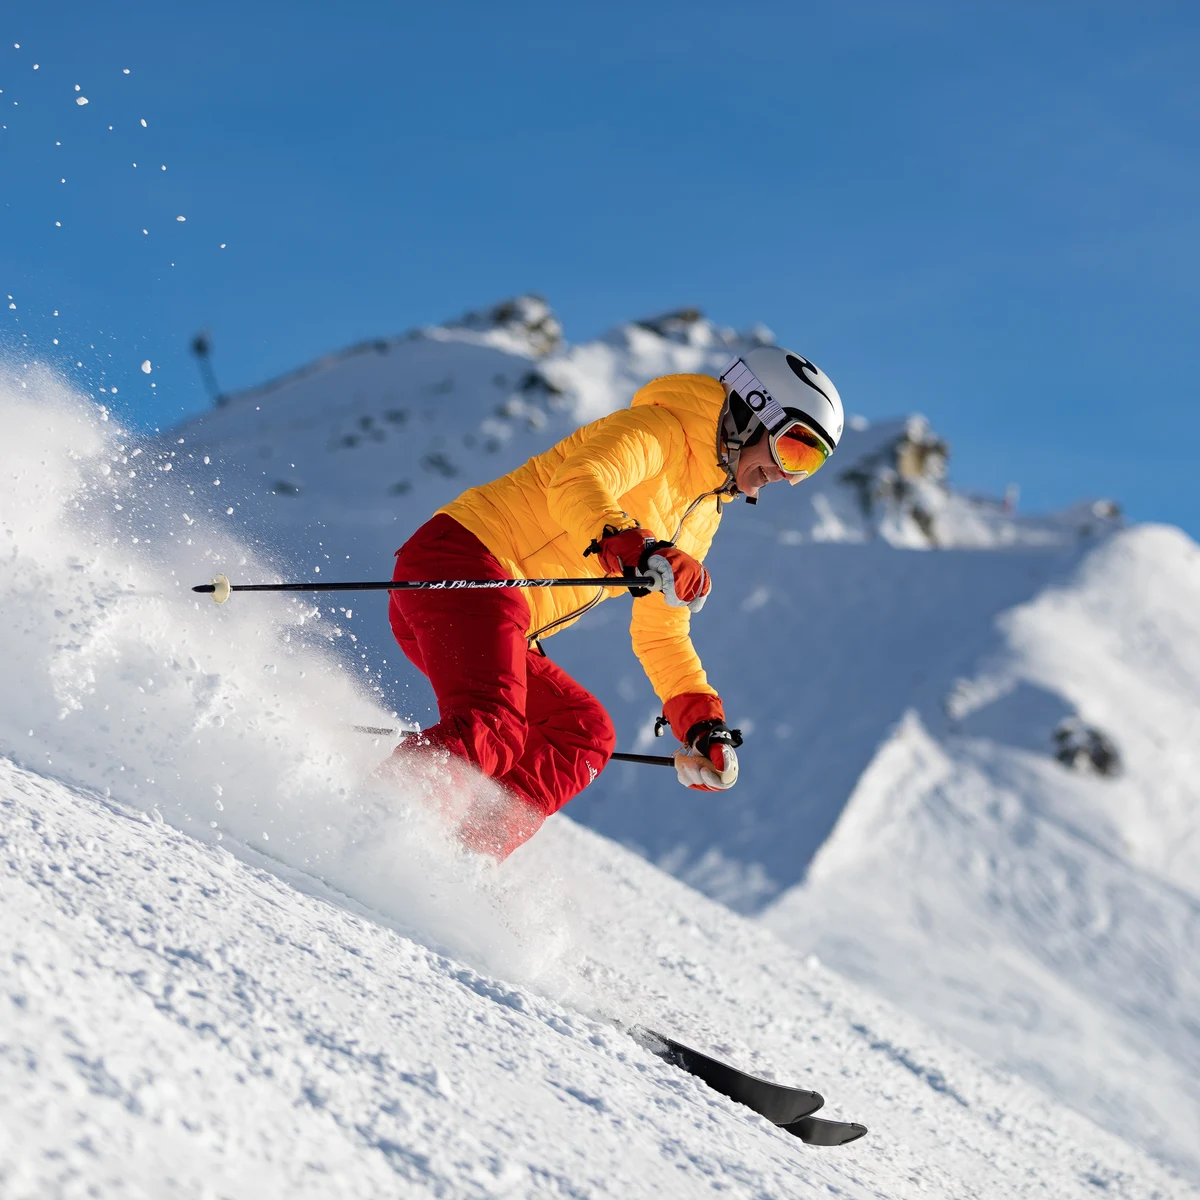 Dónde comprar de esquí barata para triunfar en las pistas este invierno